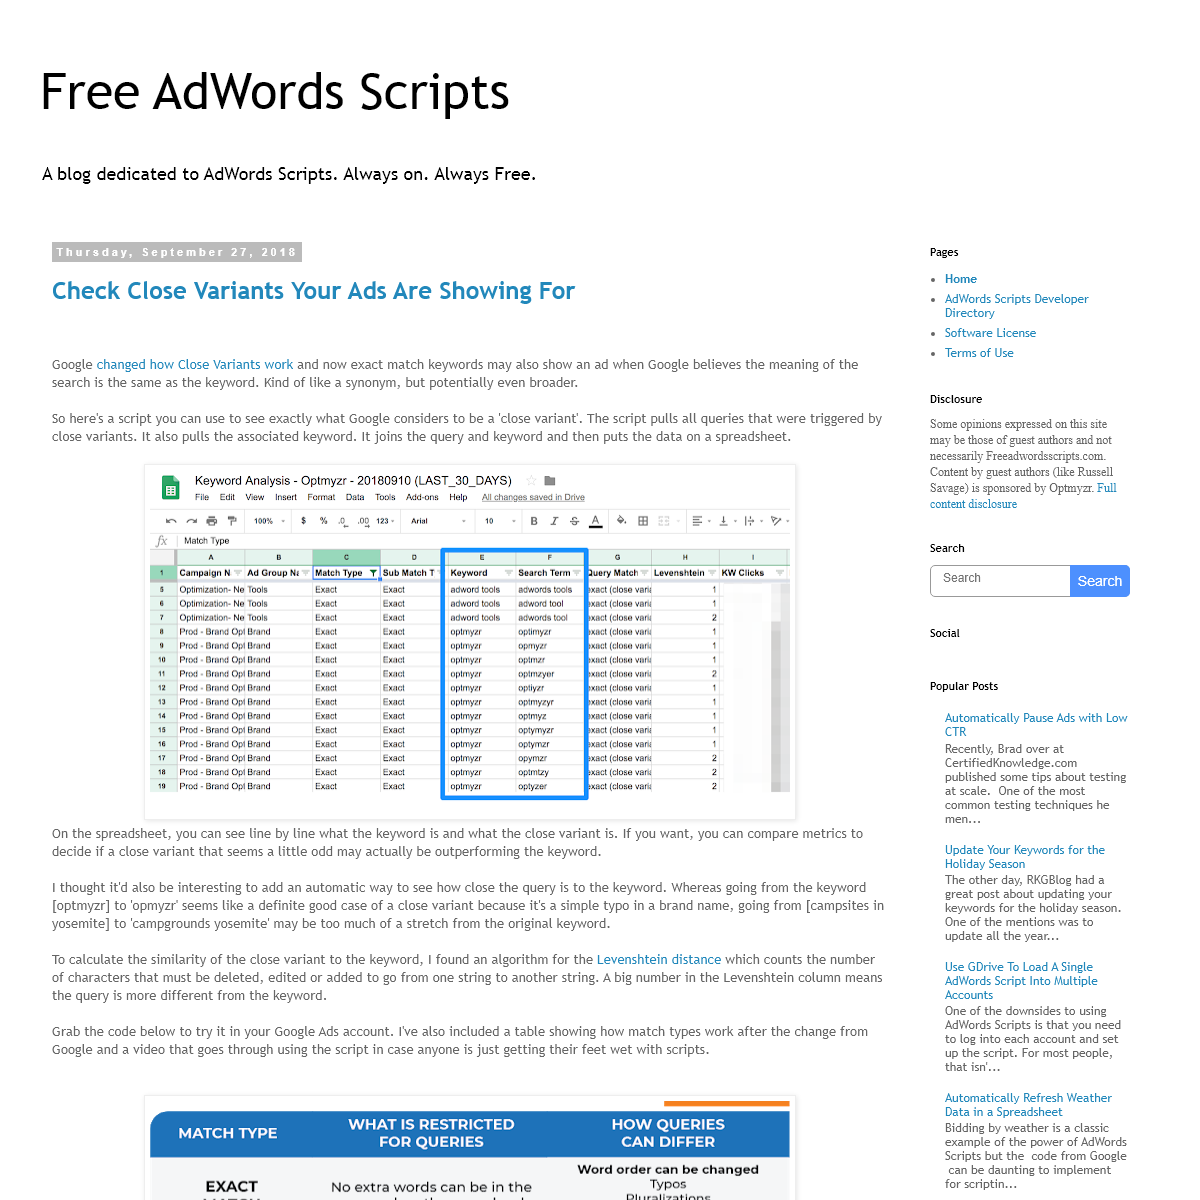 A complete backup of freeadwordsscripts.com